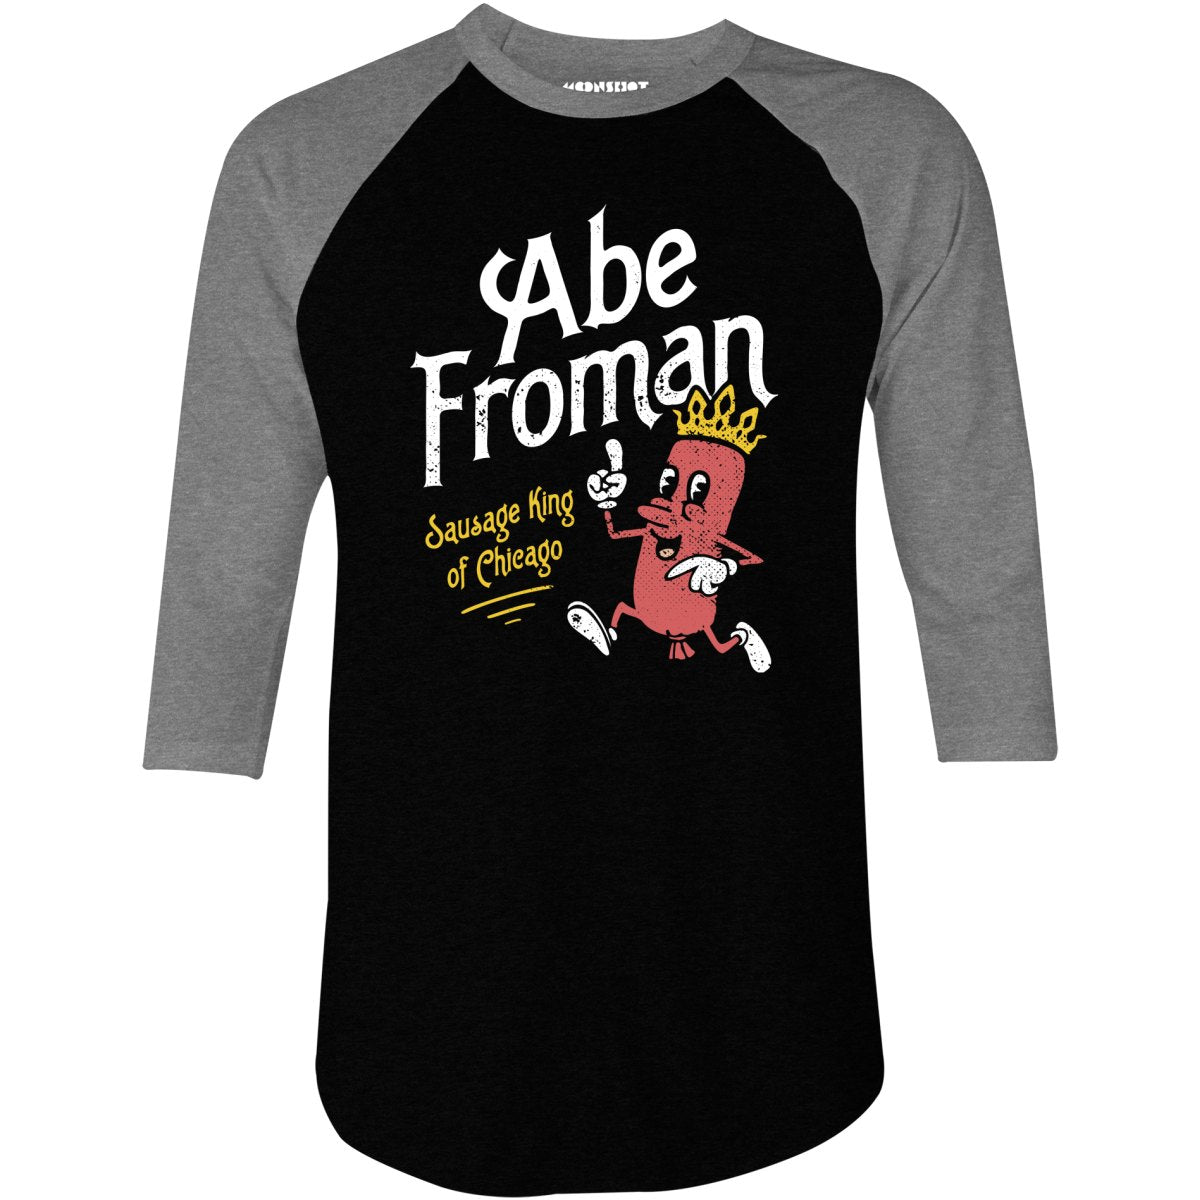 Abe Froman - Sausage King of Chicago - 3/4 Sleeve Raglan T-Shirt